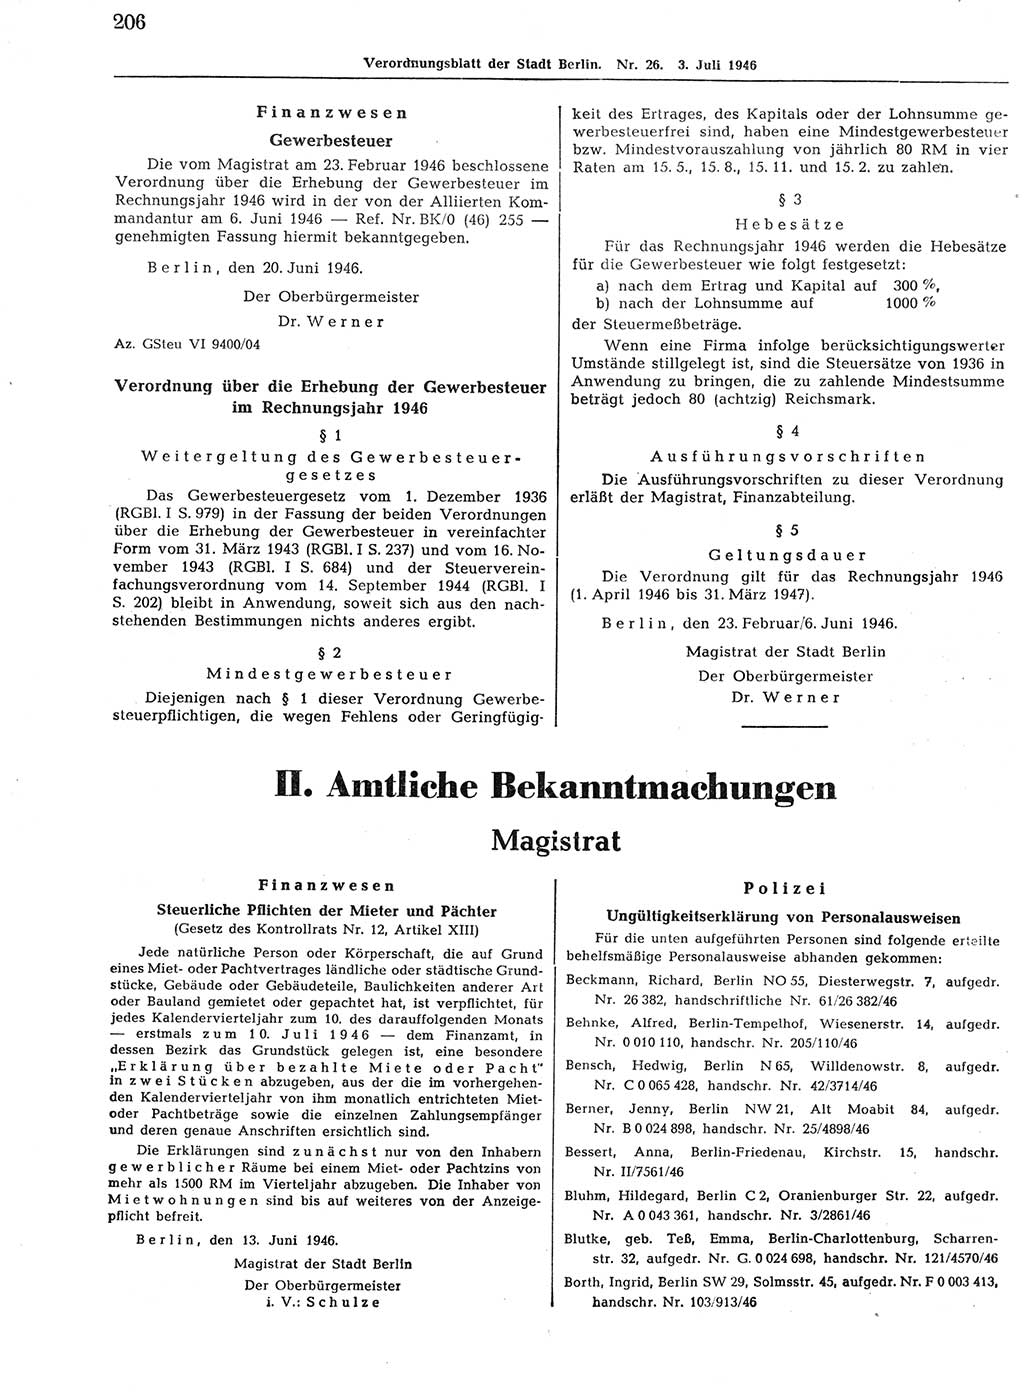 Verordnungsblatt (VOBl.) der Stadt Berlin, für Groß-Berlin 1946, Seite 206 (VOBl. Bln. 1946, S. 206)